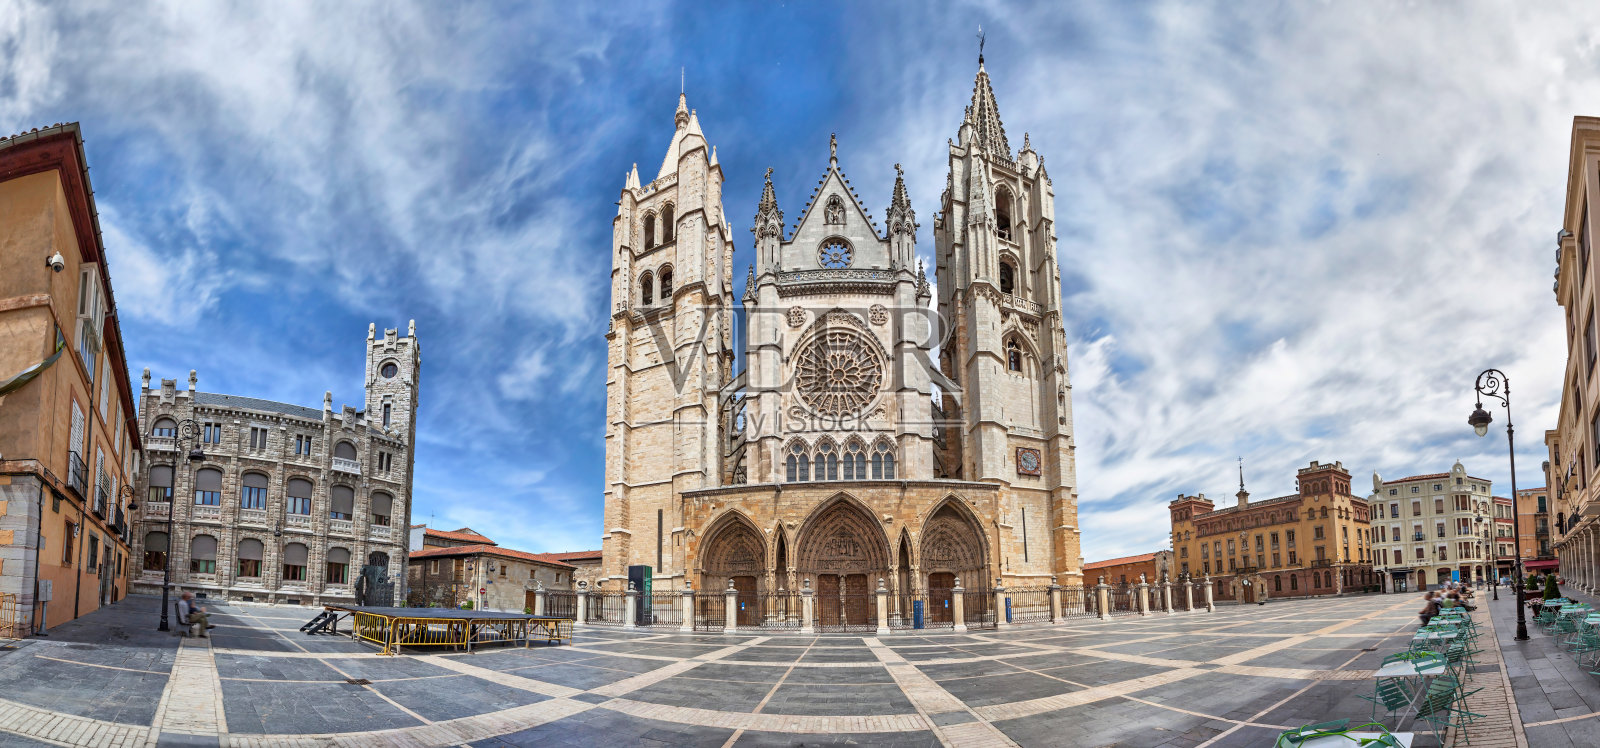 西班牙雷格拉广场和里昂大教堂全景图照片摄影图片